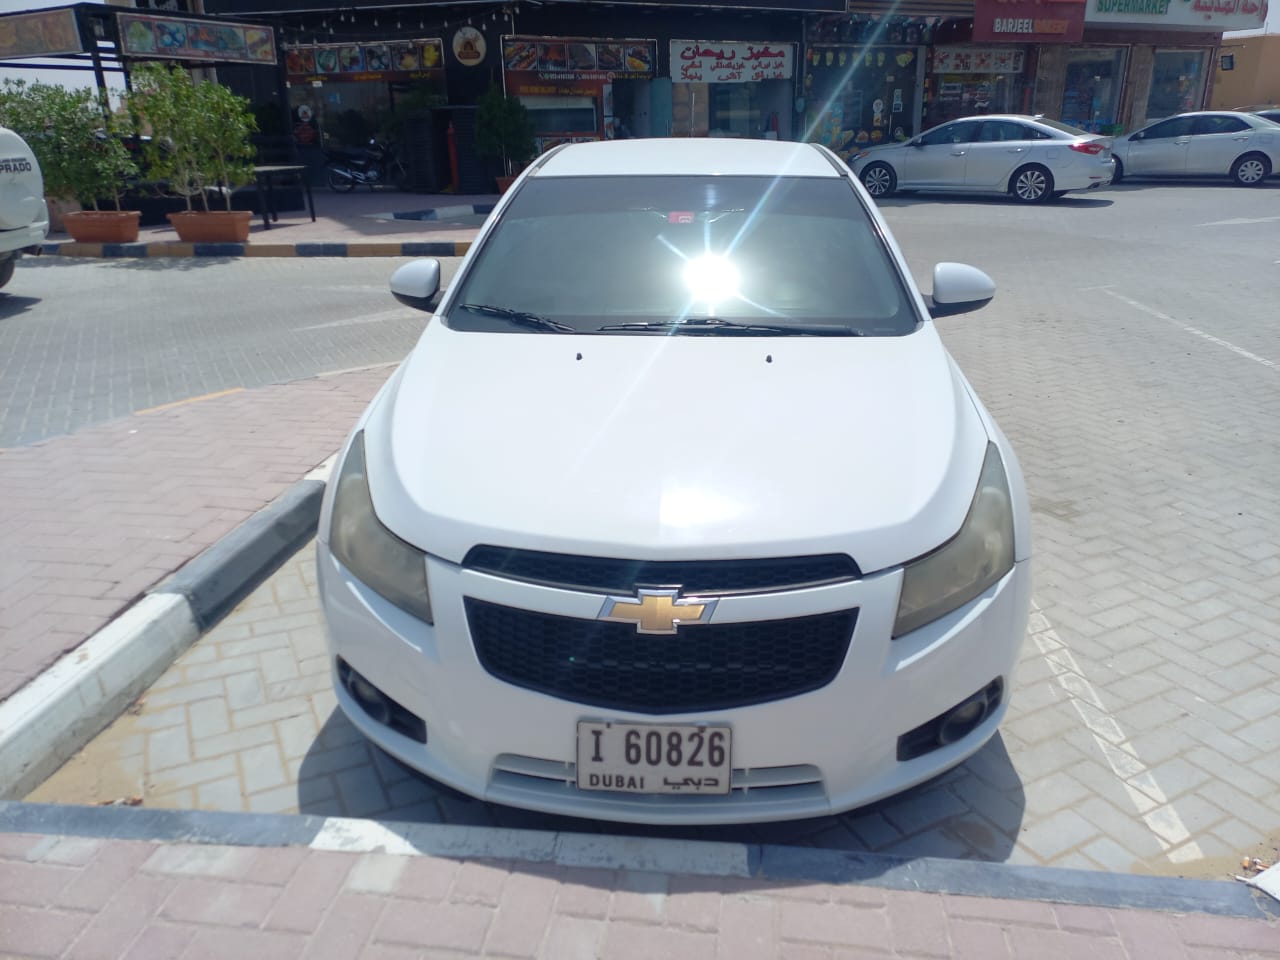 Chevrolet Cruze 2011 Car for Sale in Dubai